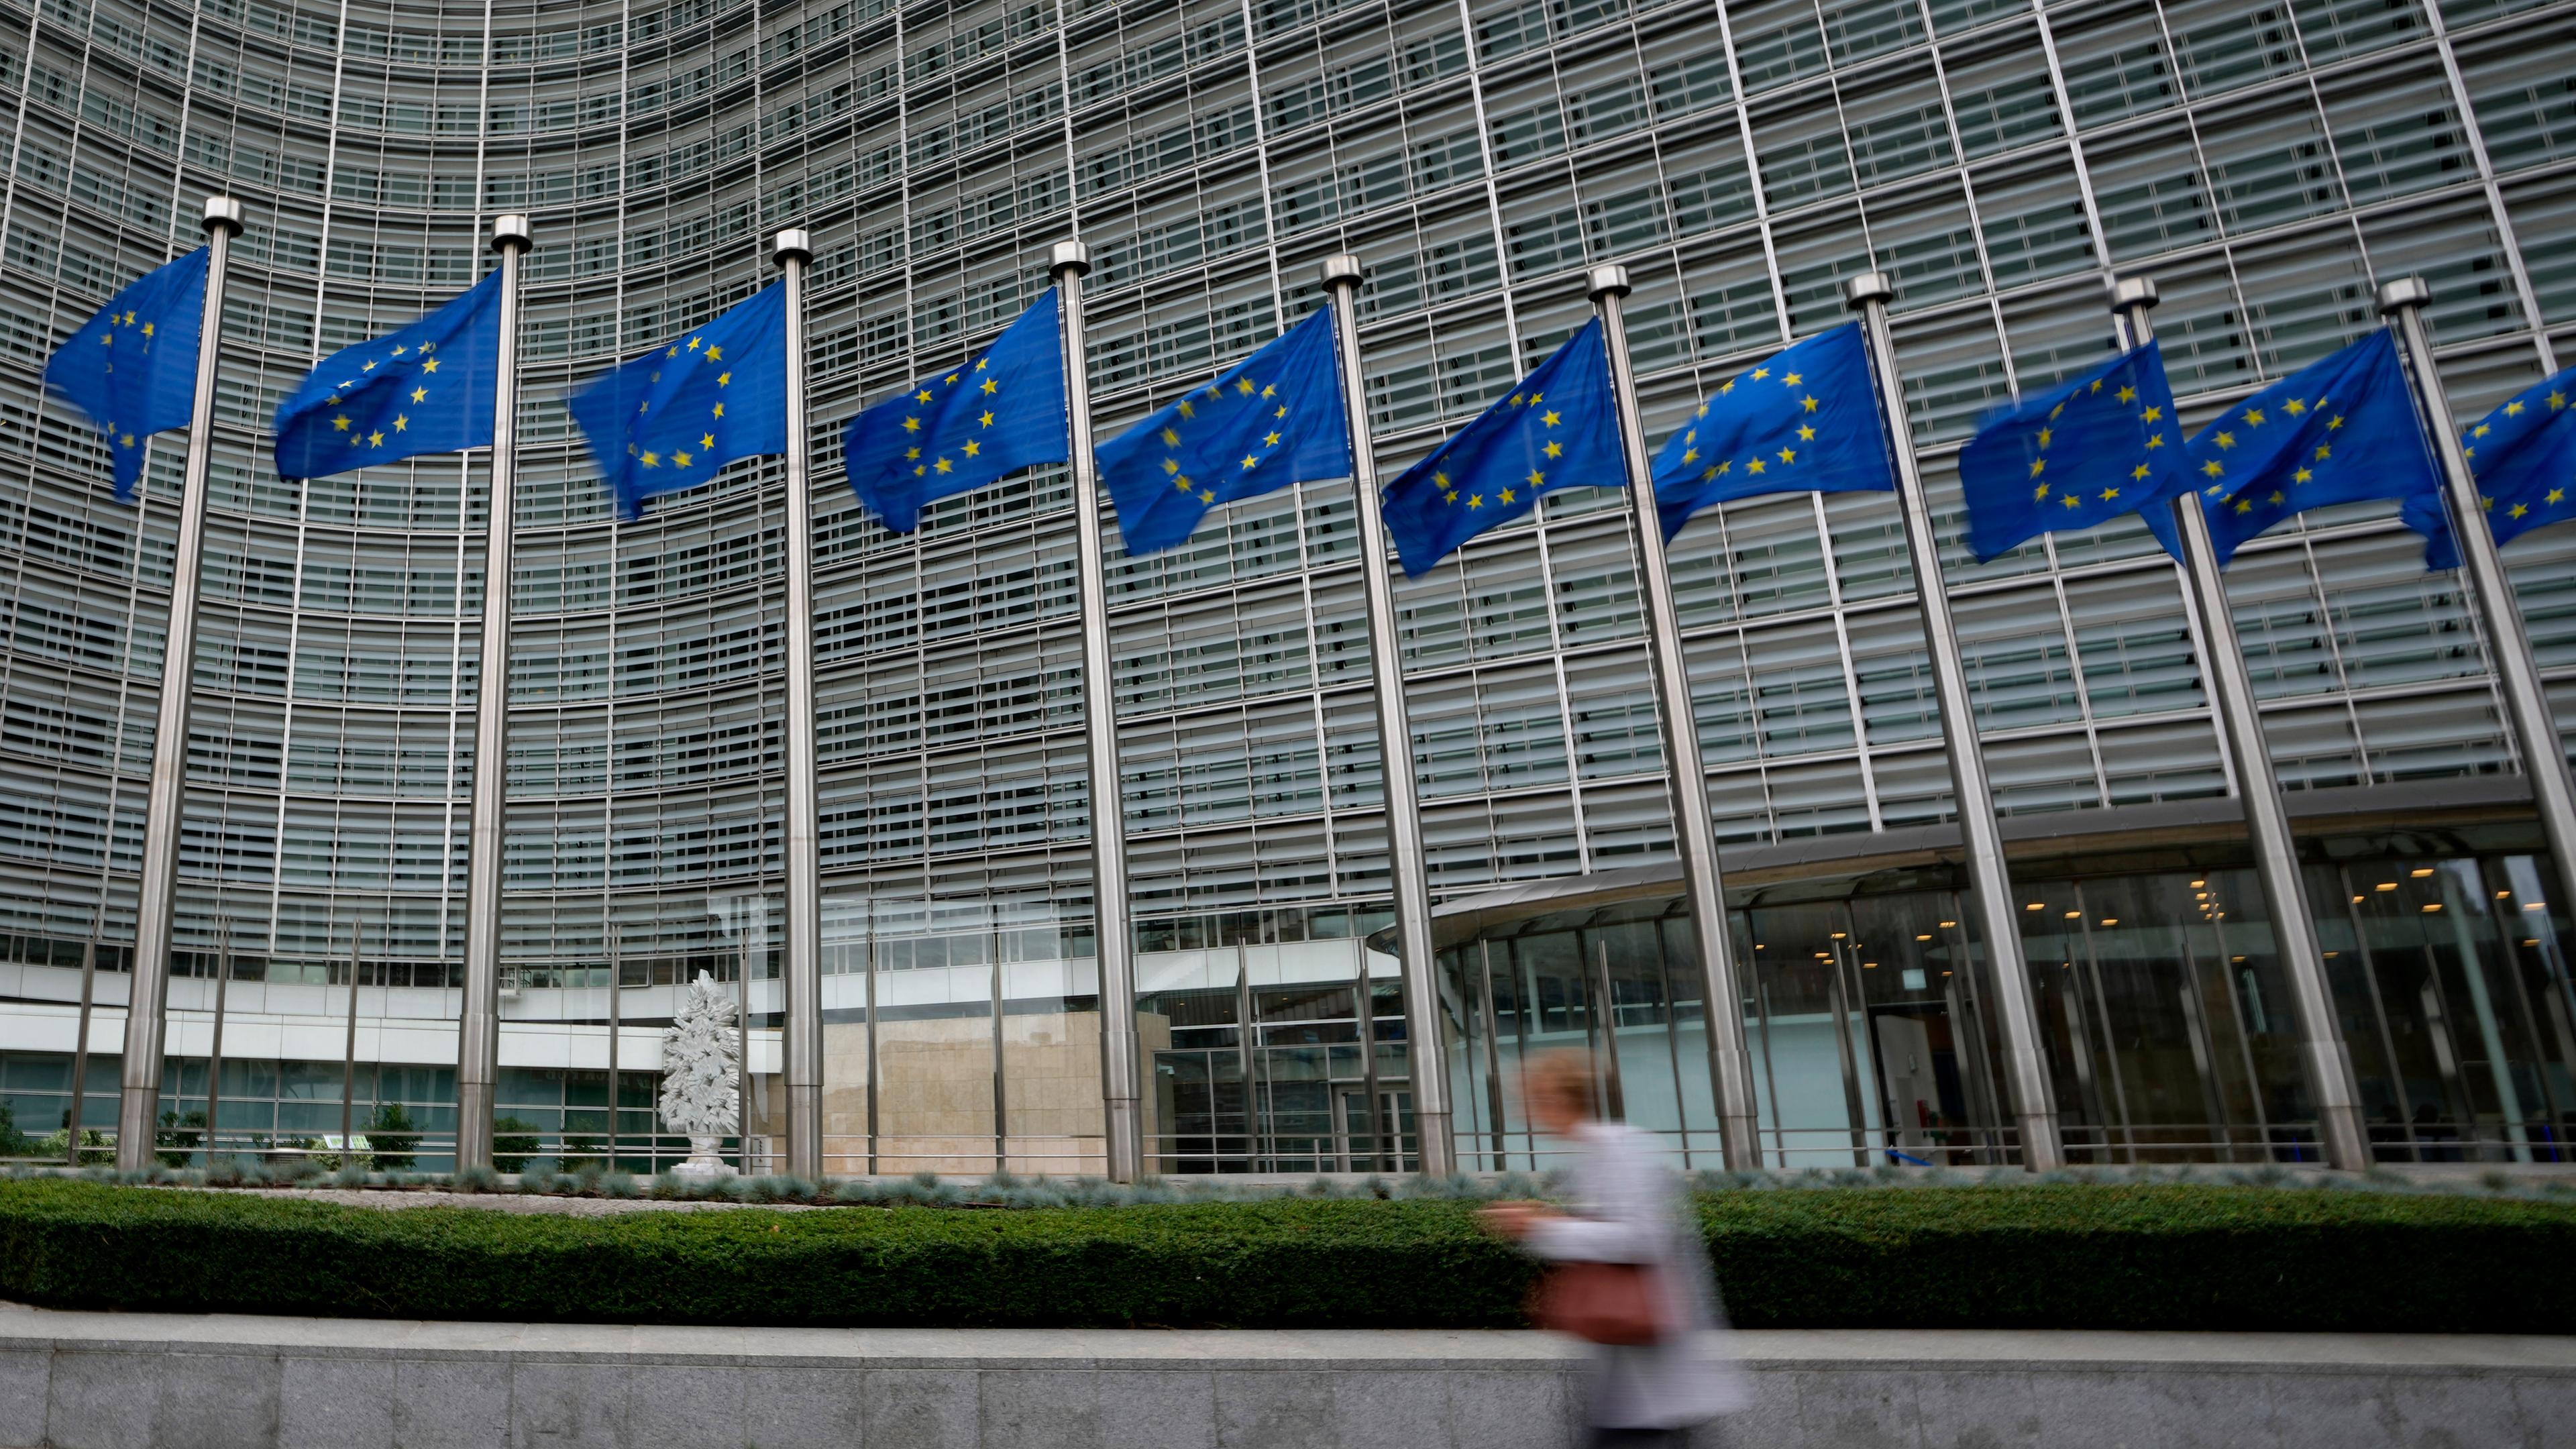 Belgien, Brüssel: EU-Fahnen flattern im Wind, während eine Person am Hauptsitz der EU vorbeigeht